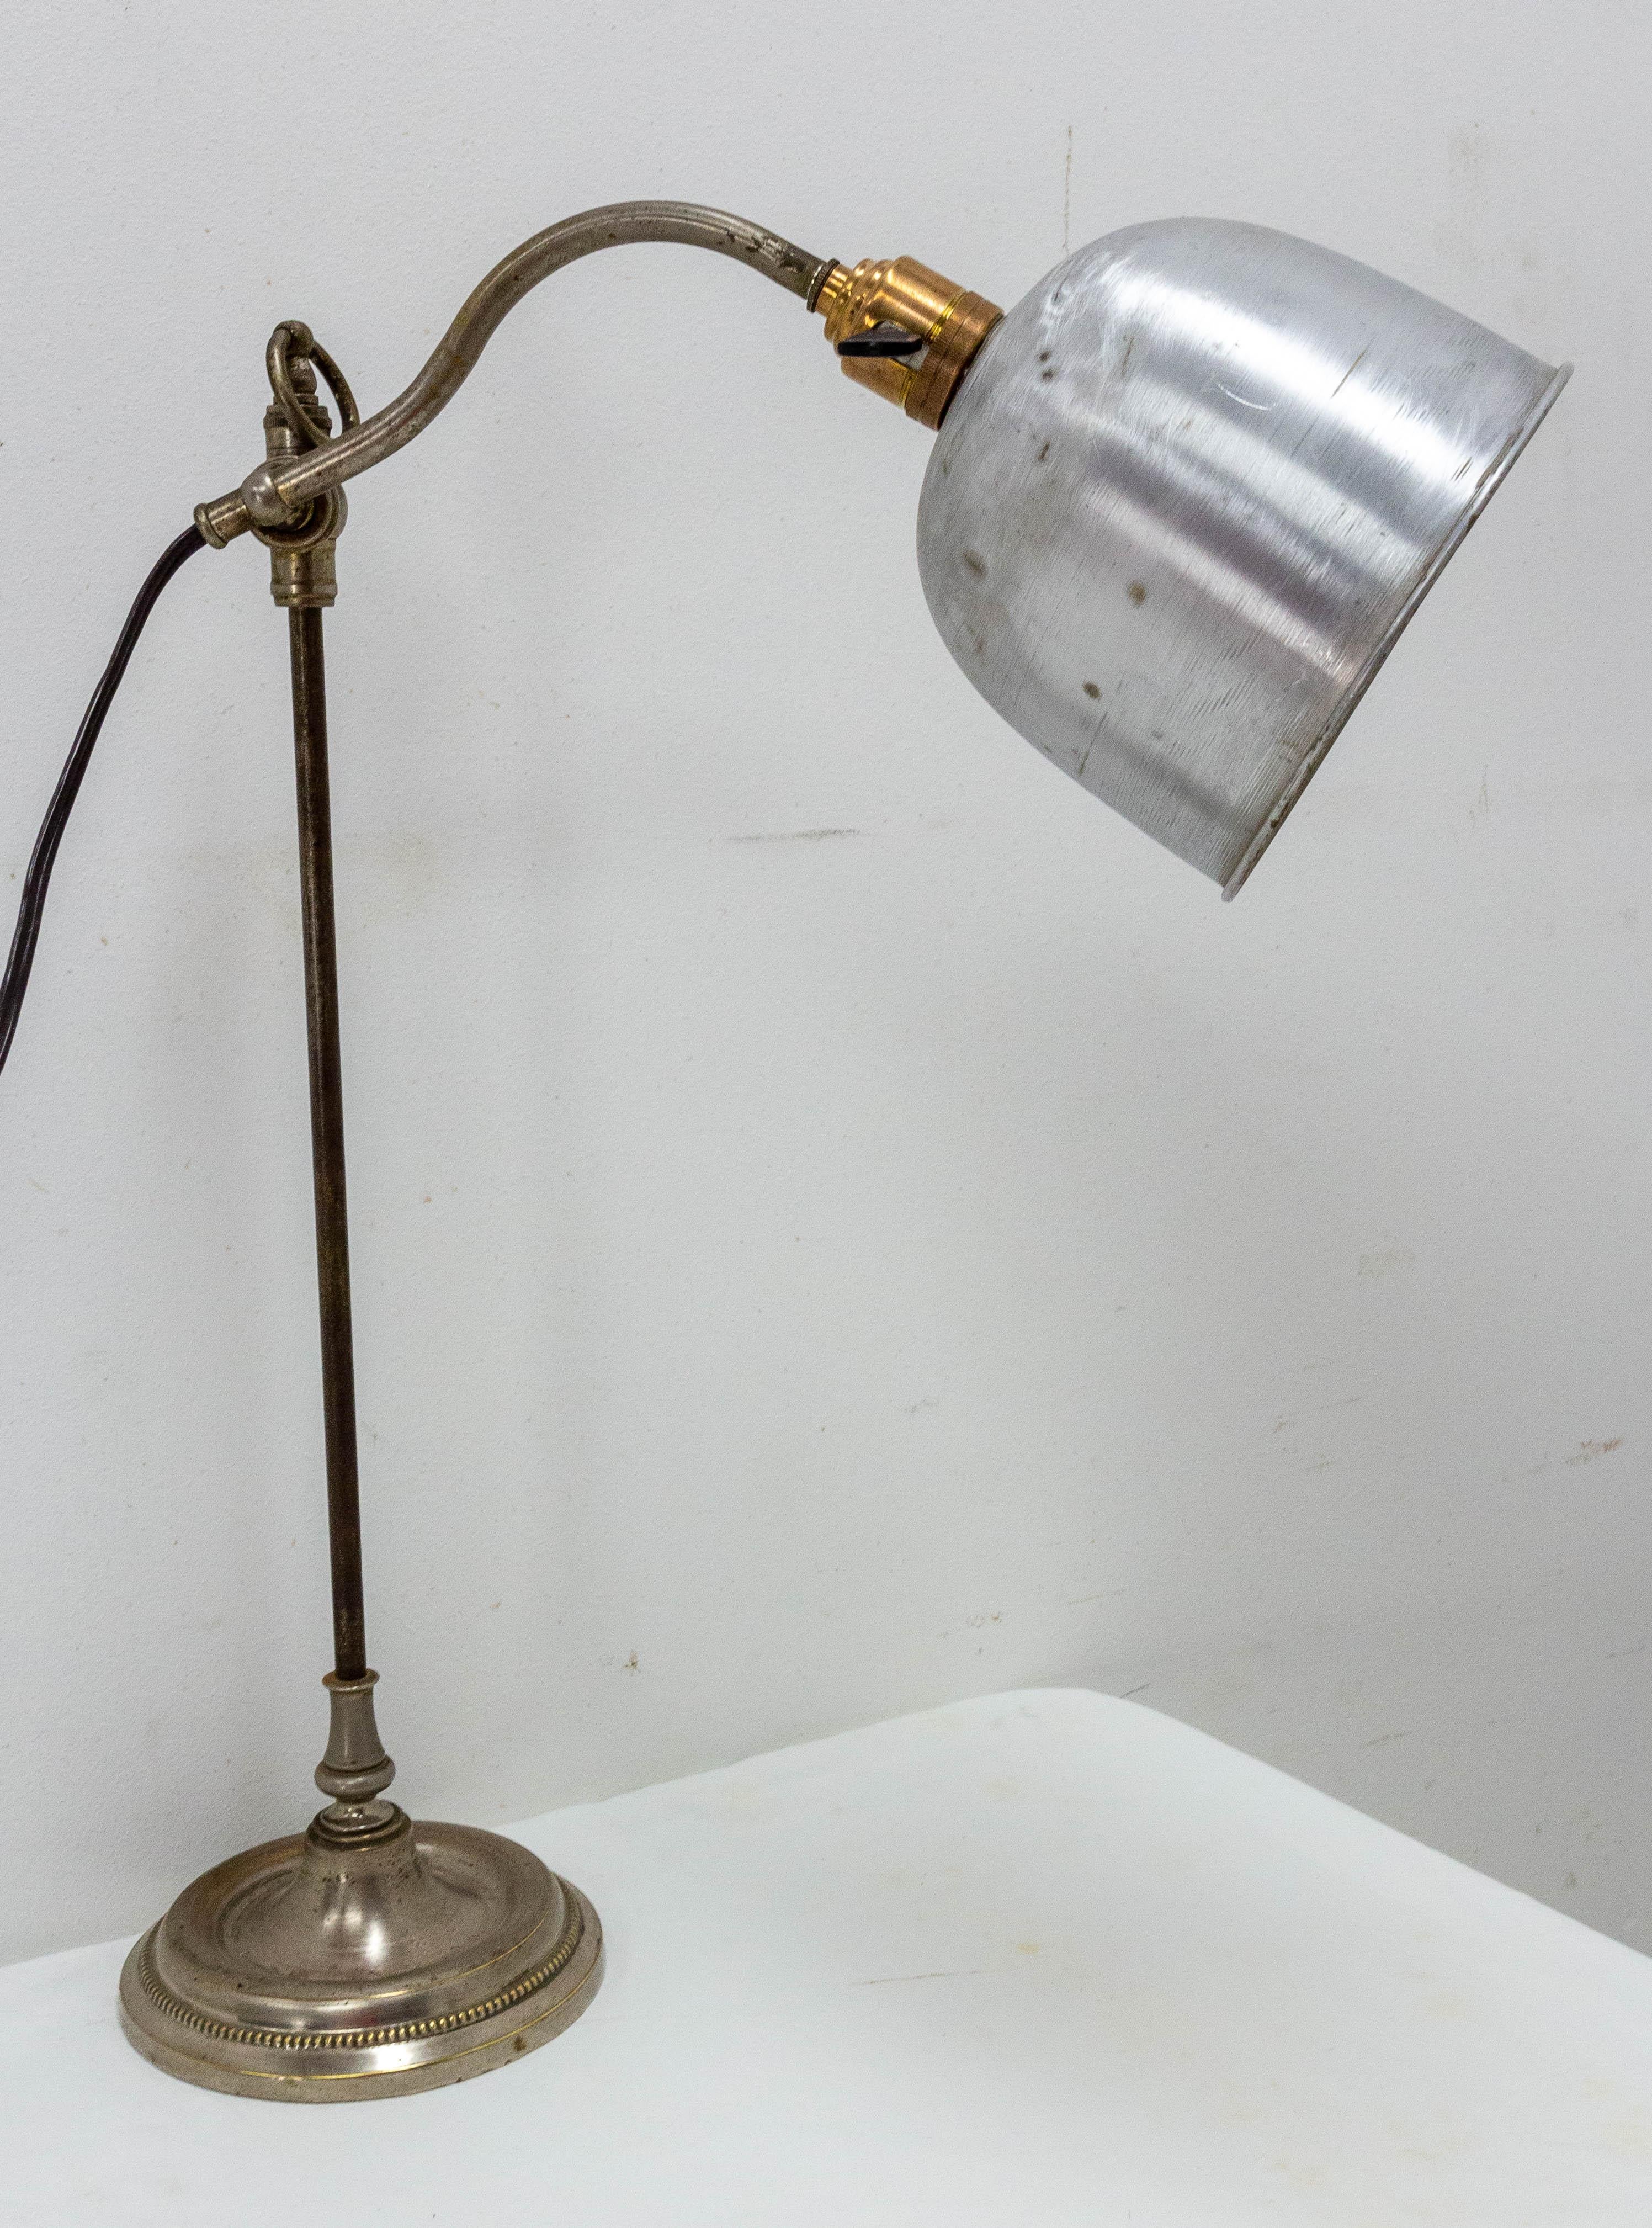 L'Art Déco dans la lampe de table de style industriel,
Français, vers 1930.
Il peut être recâblé selon les normes américaines ou européennes et britanniques.
Bon état.

Expédition :
P 17 L 20 H 48 2,2 kg.